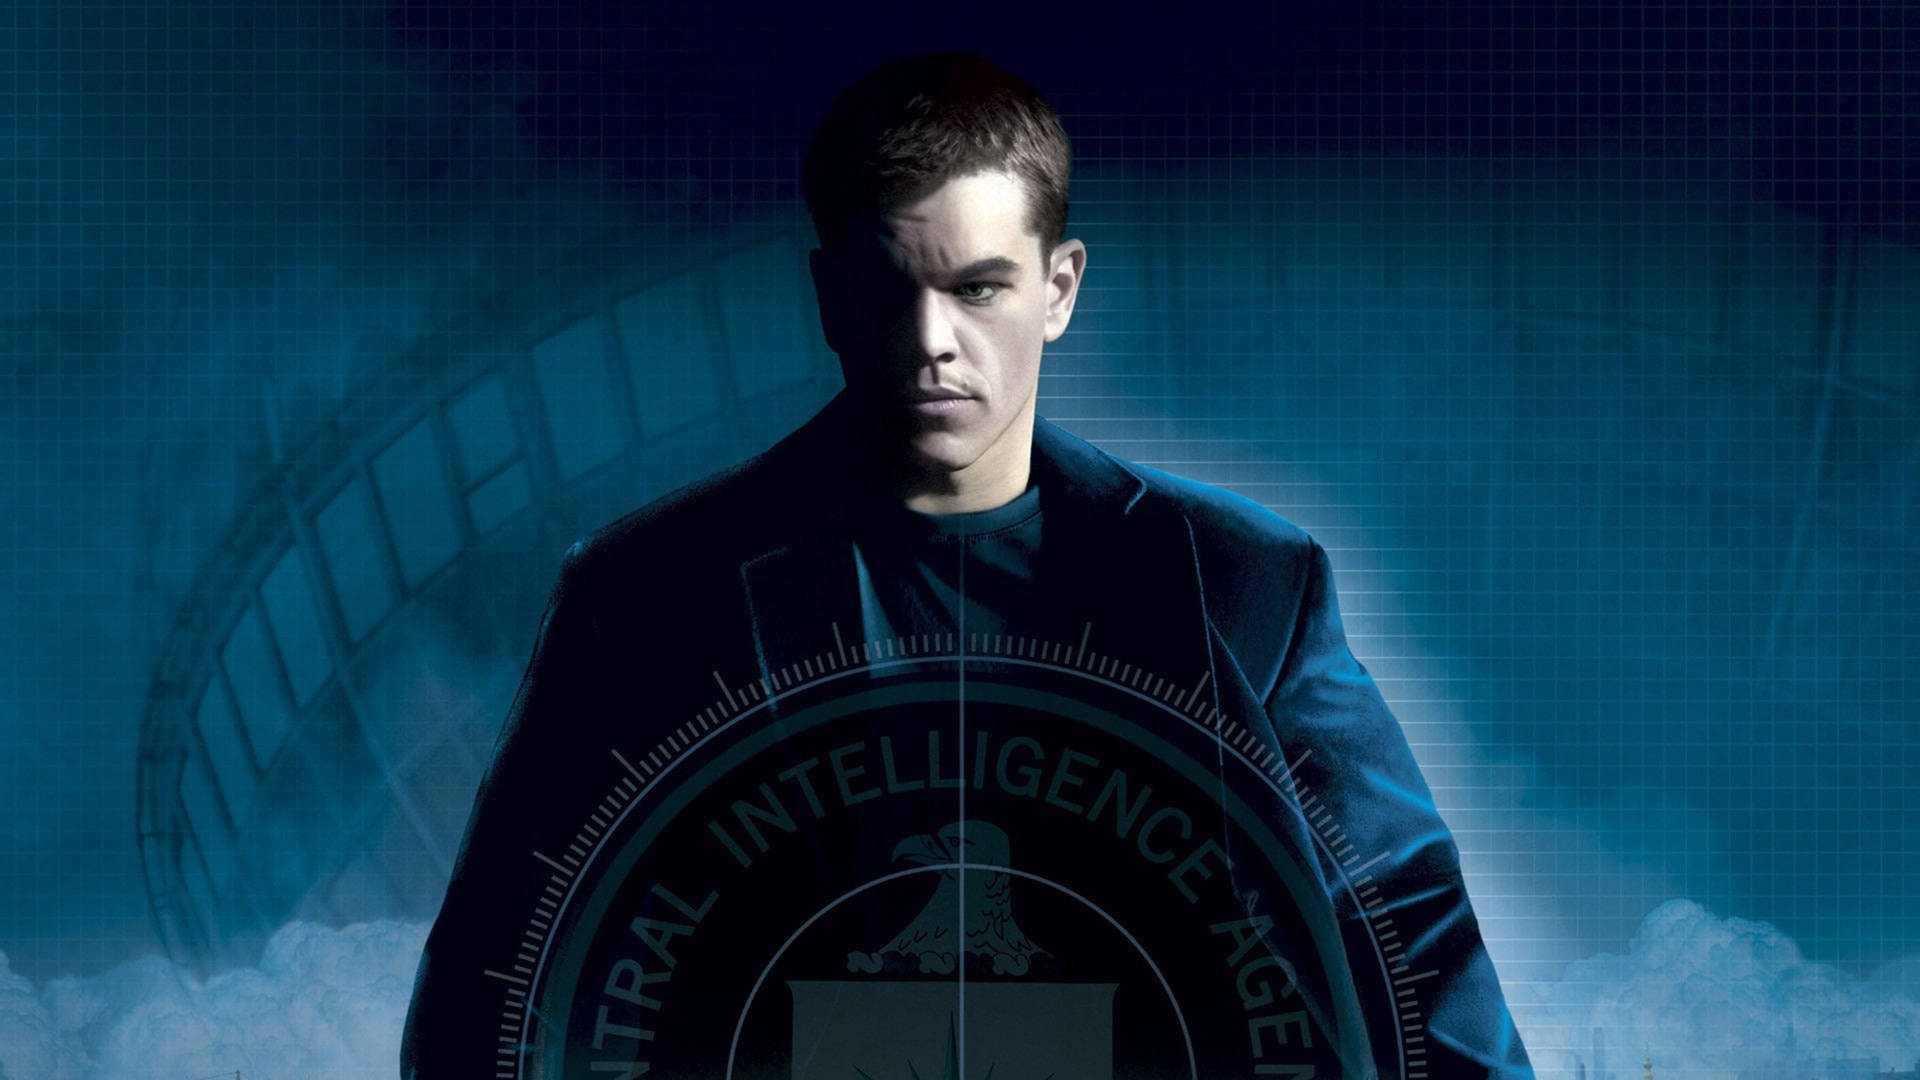 Bourne Actor Matt Damon